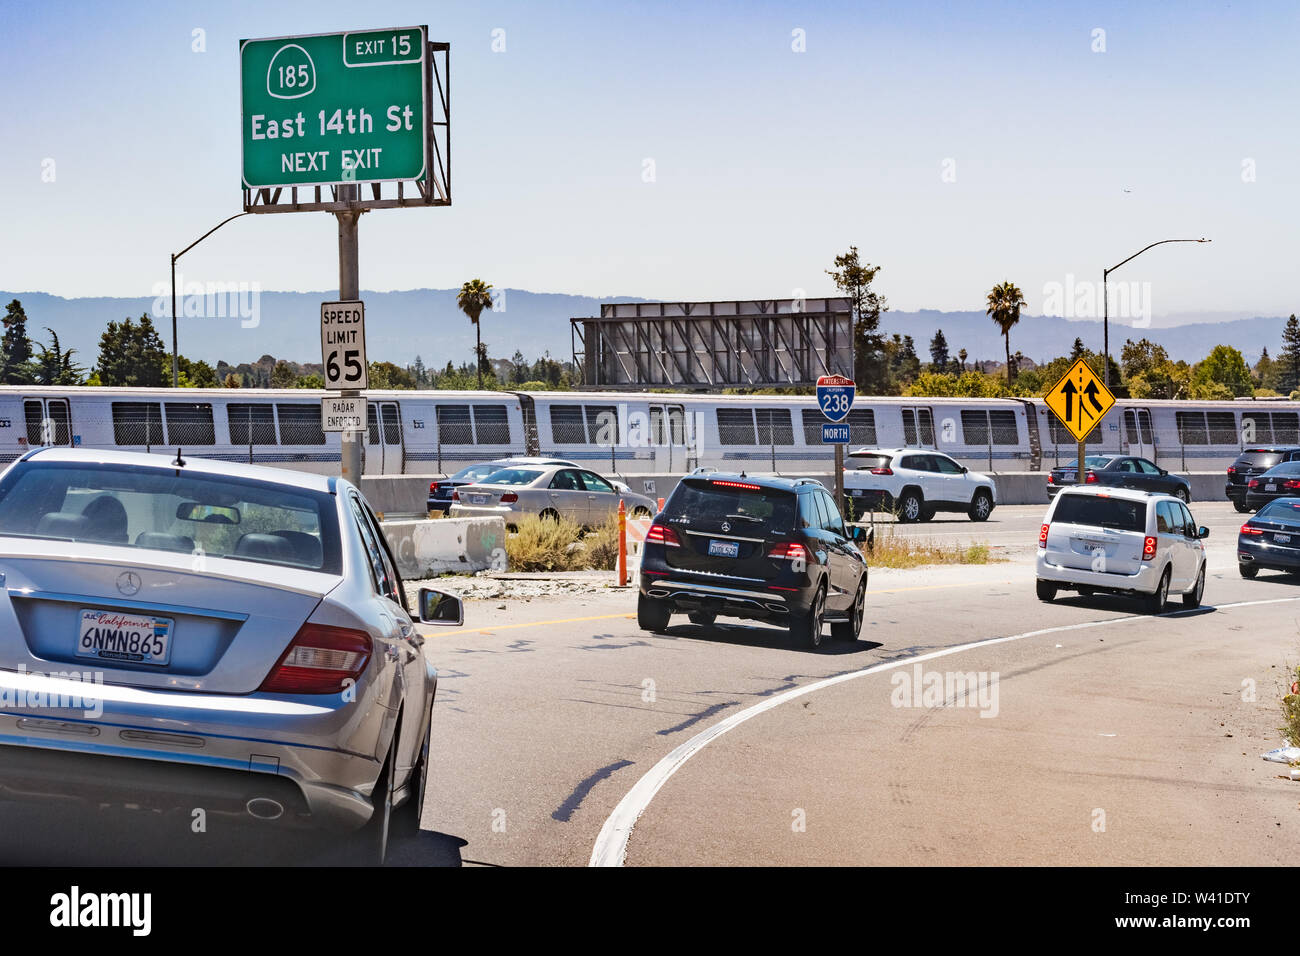 Juli 13, 2019 Hayward/CA/USA - Autobahn Eingang im Osten von der San Francisco Bay Area; BART (Bay Area Rapid Transit)-Zug passiert im Hintergrund Stockfoto